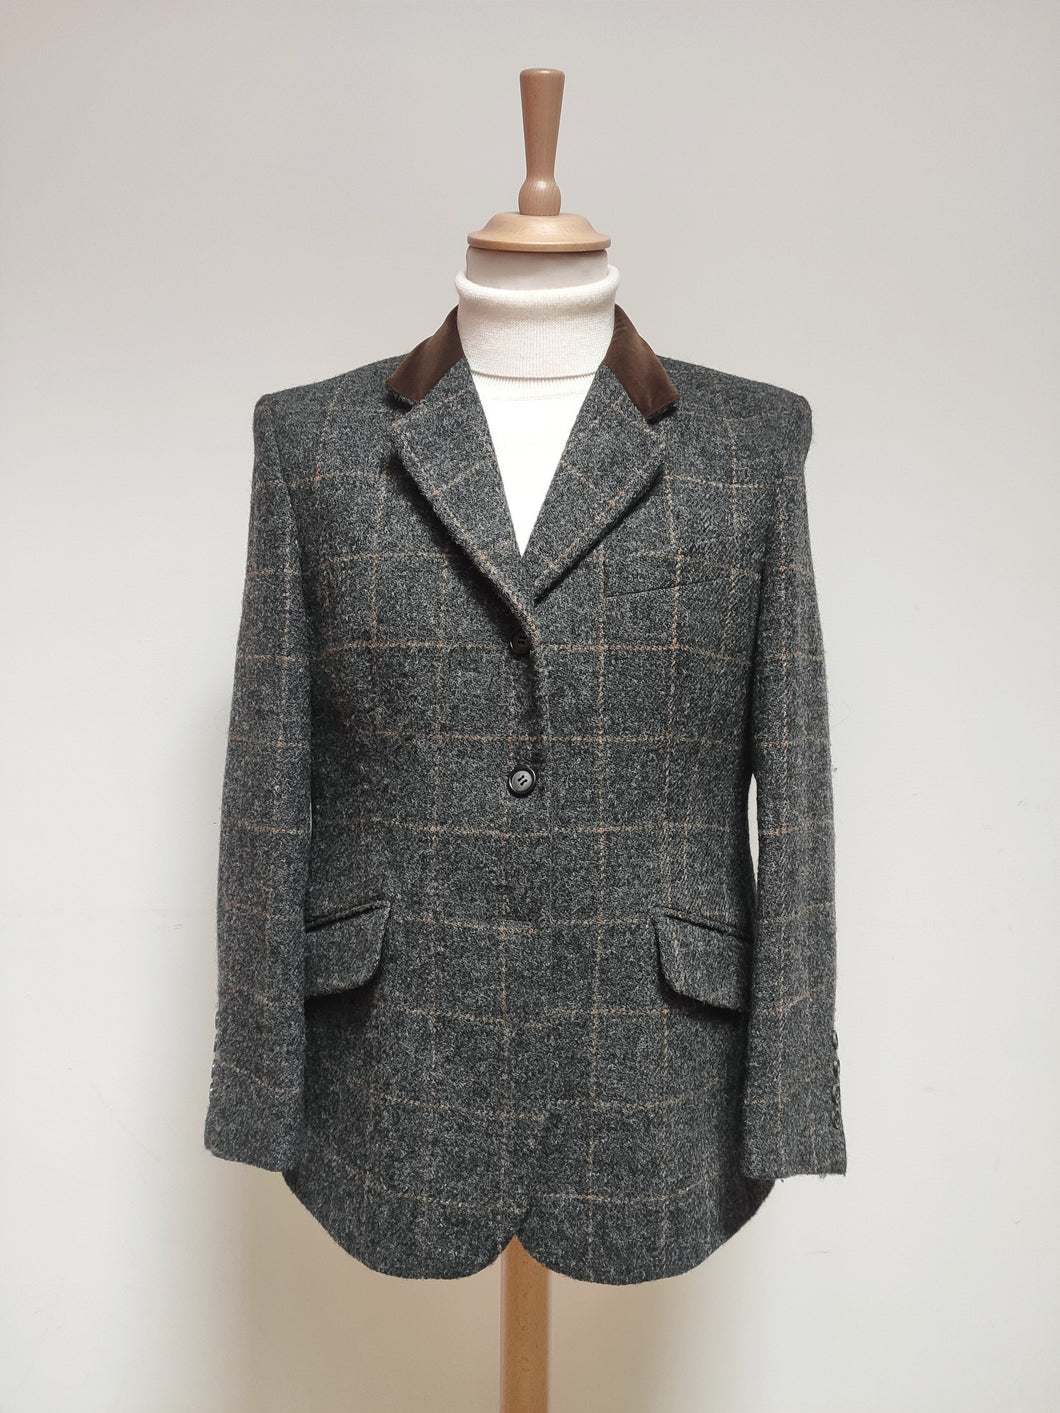 Cyrillus Paris blazer Harris Tweed femme vintage 46 Made in France